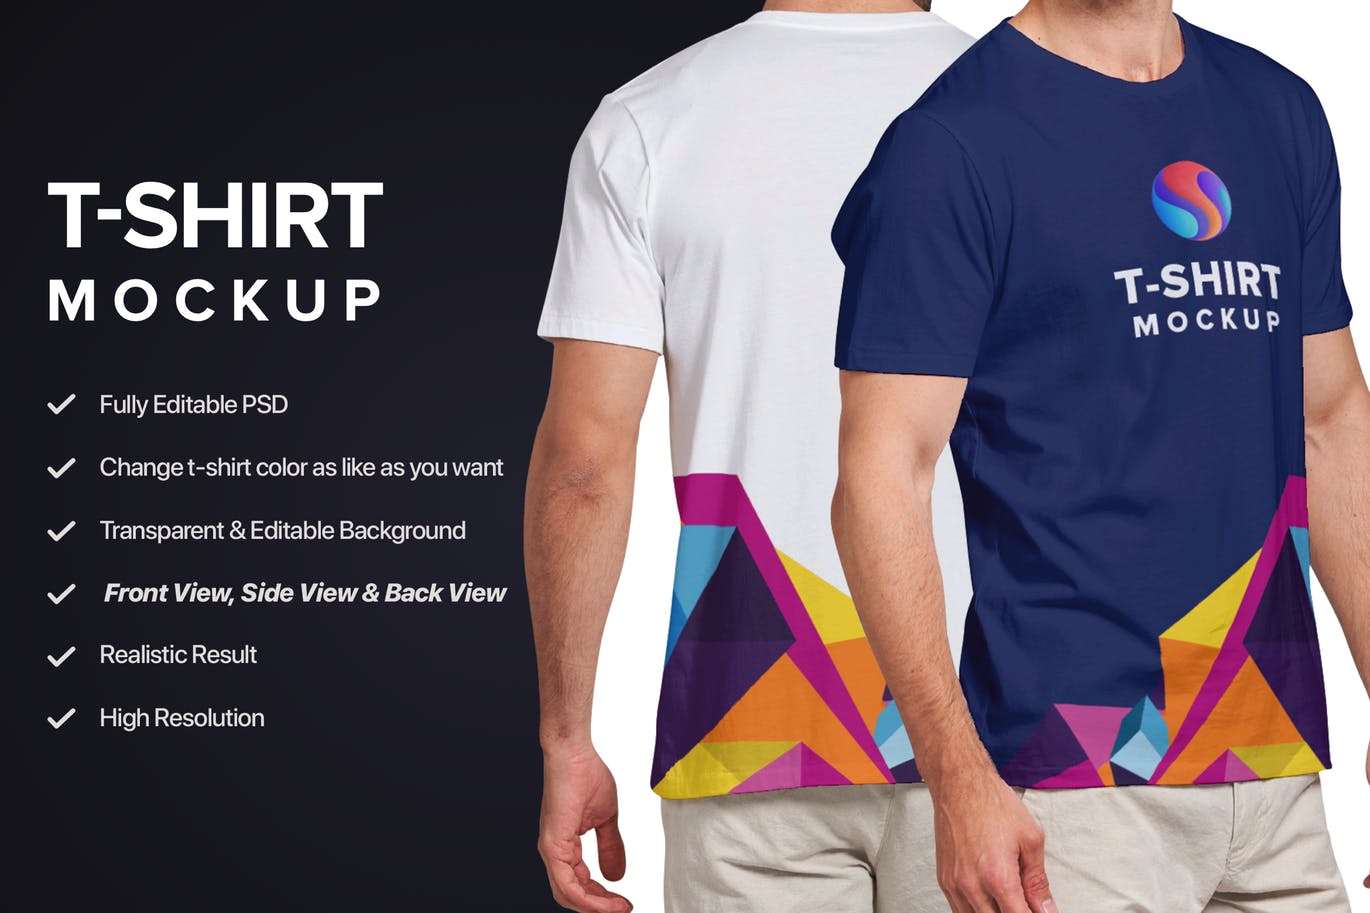 男士T恤设计模特上身正反面效果图样机模板v3 T-shirt Mockup 3.0插图